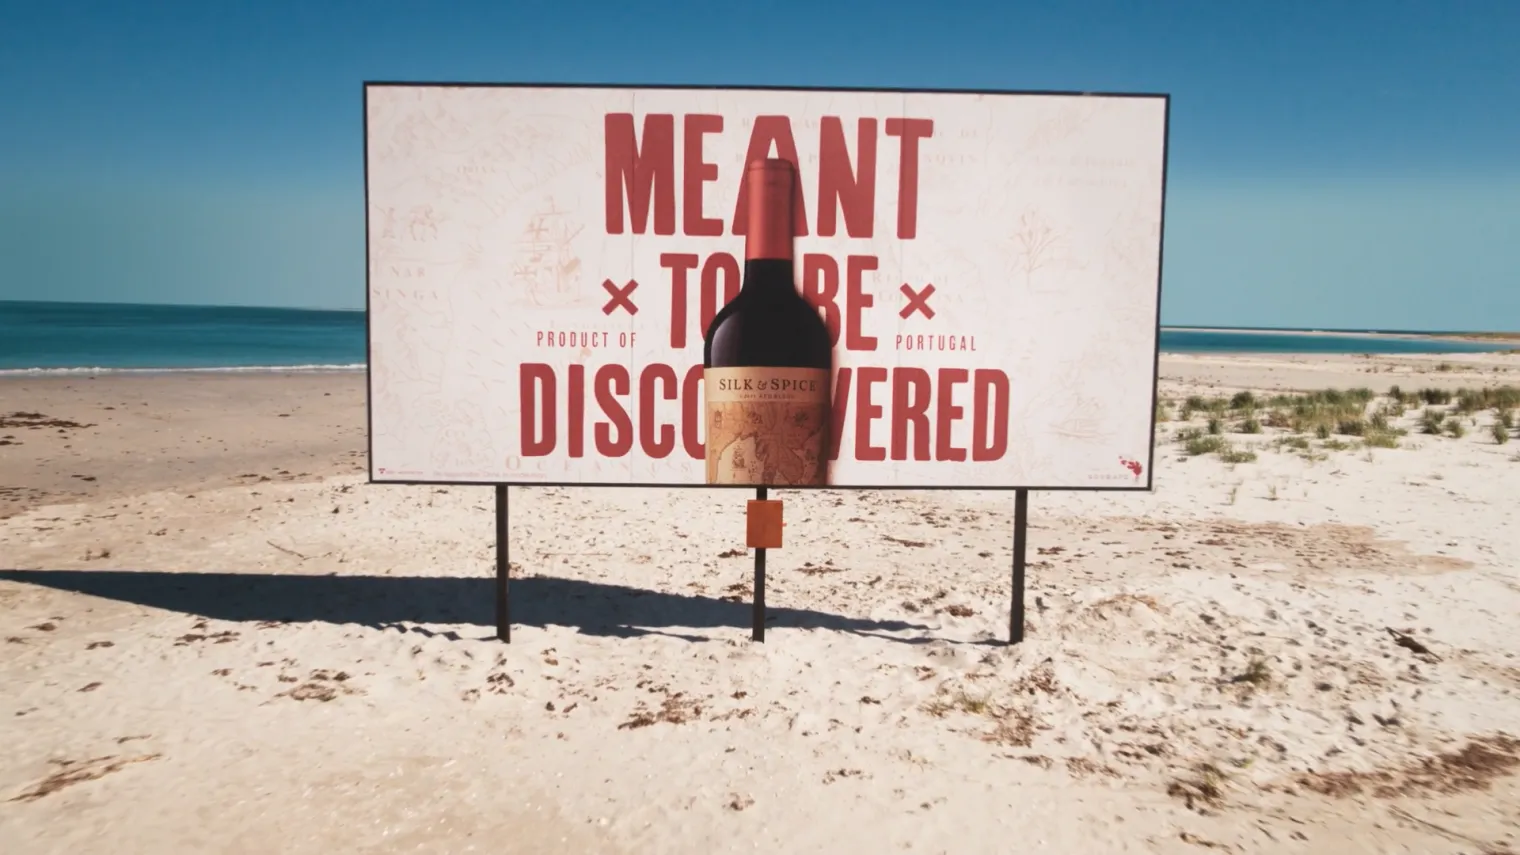 葡萄牙红酒品牌，在荒岛上建了一块有礼物的广告牌